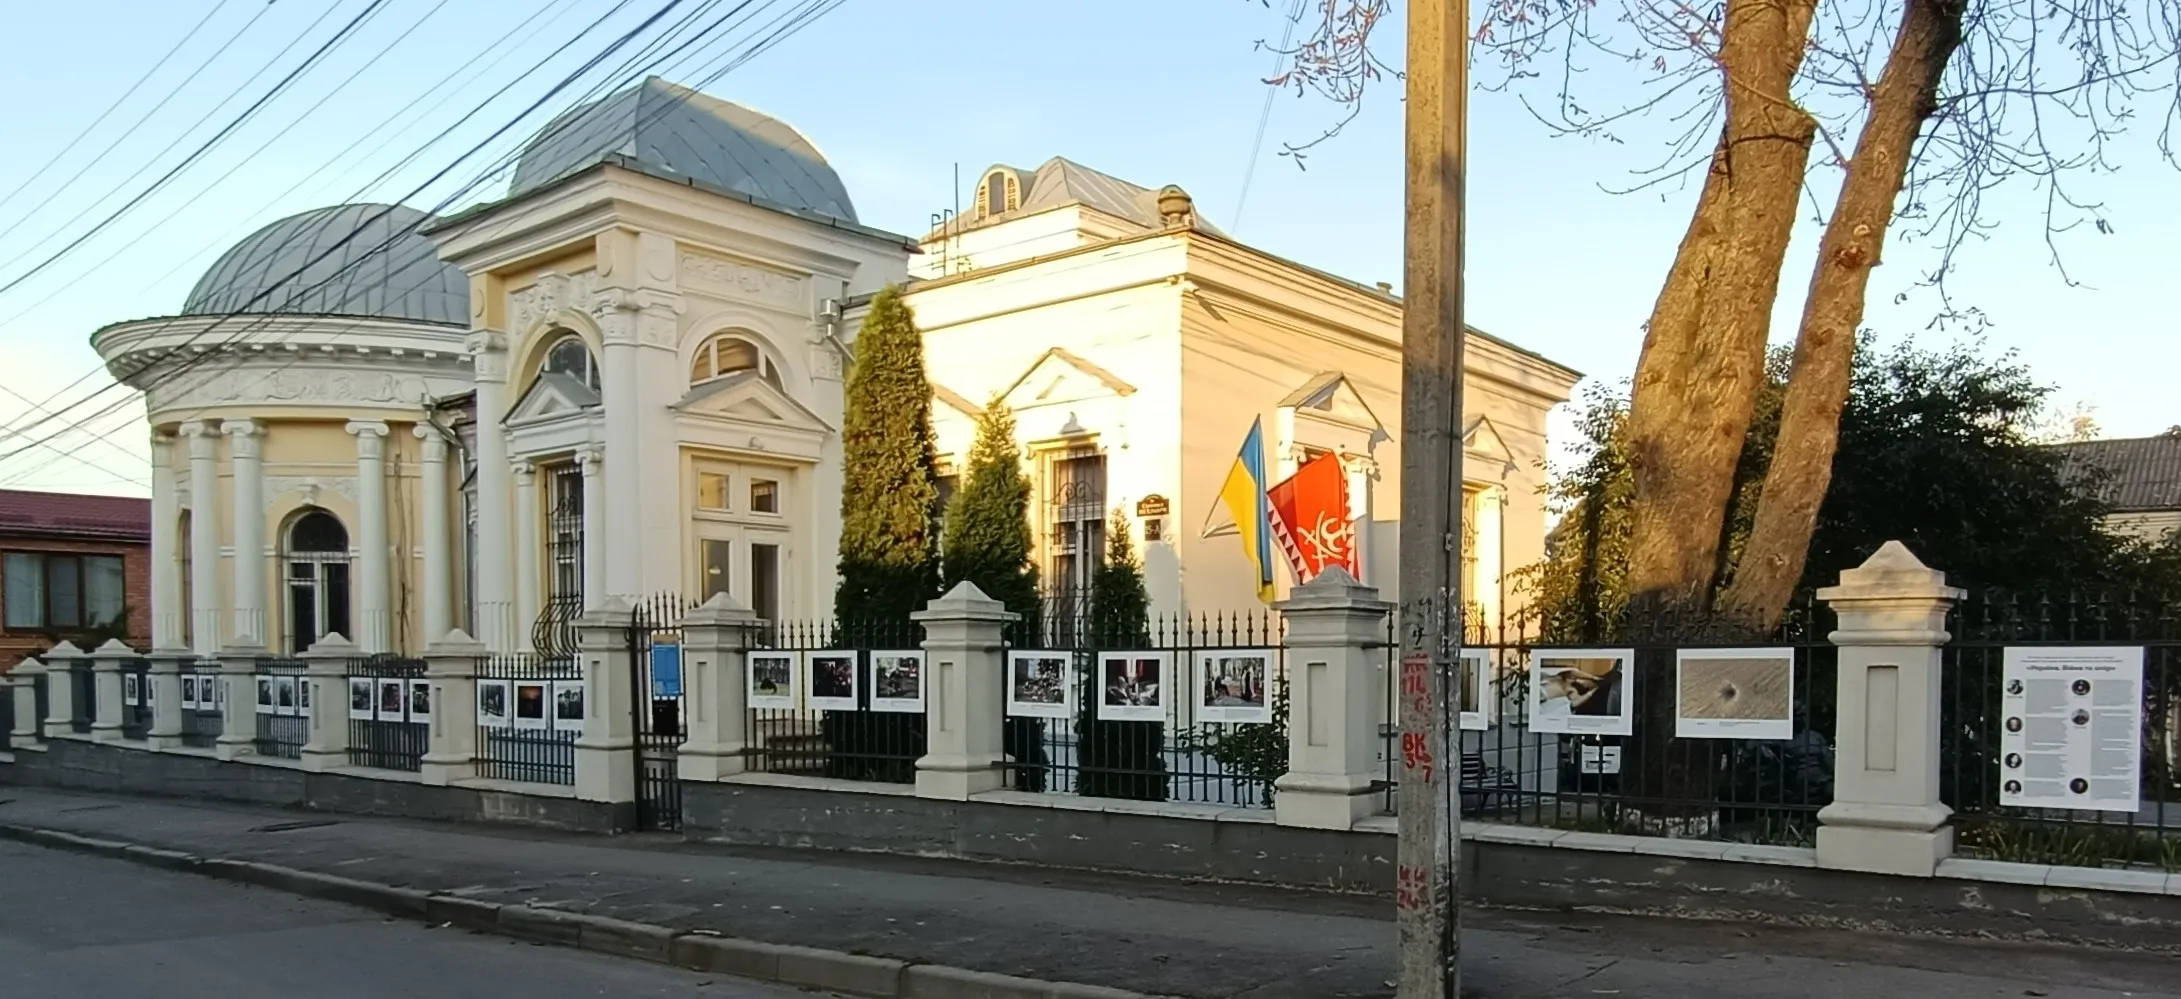 Музей Вінниці анонсує фотовиставку зі світлинами глибокого змісту: «Україна. Війна та опір» ВМР